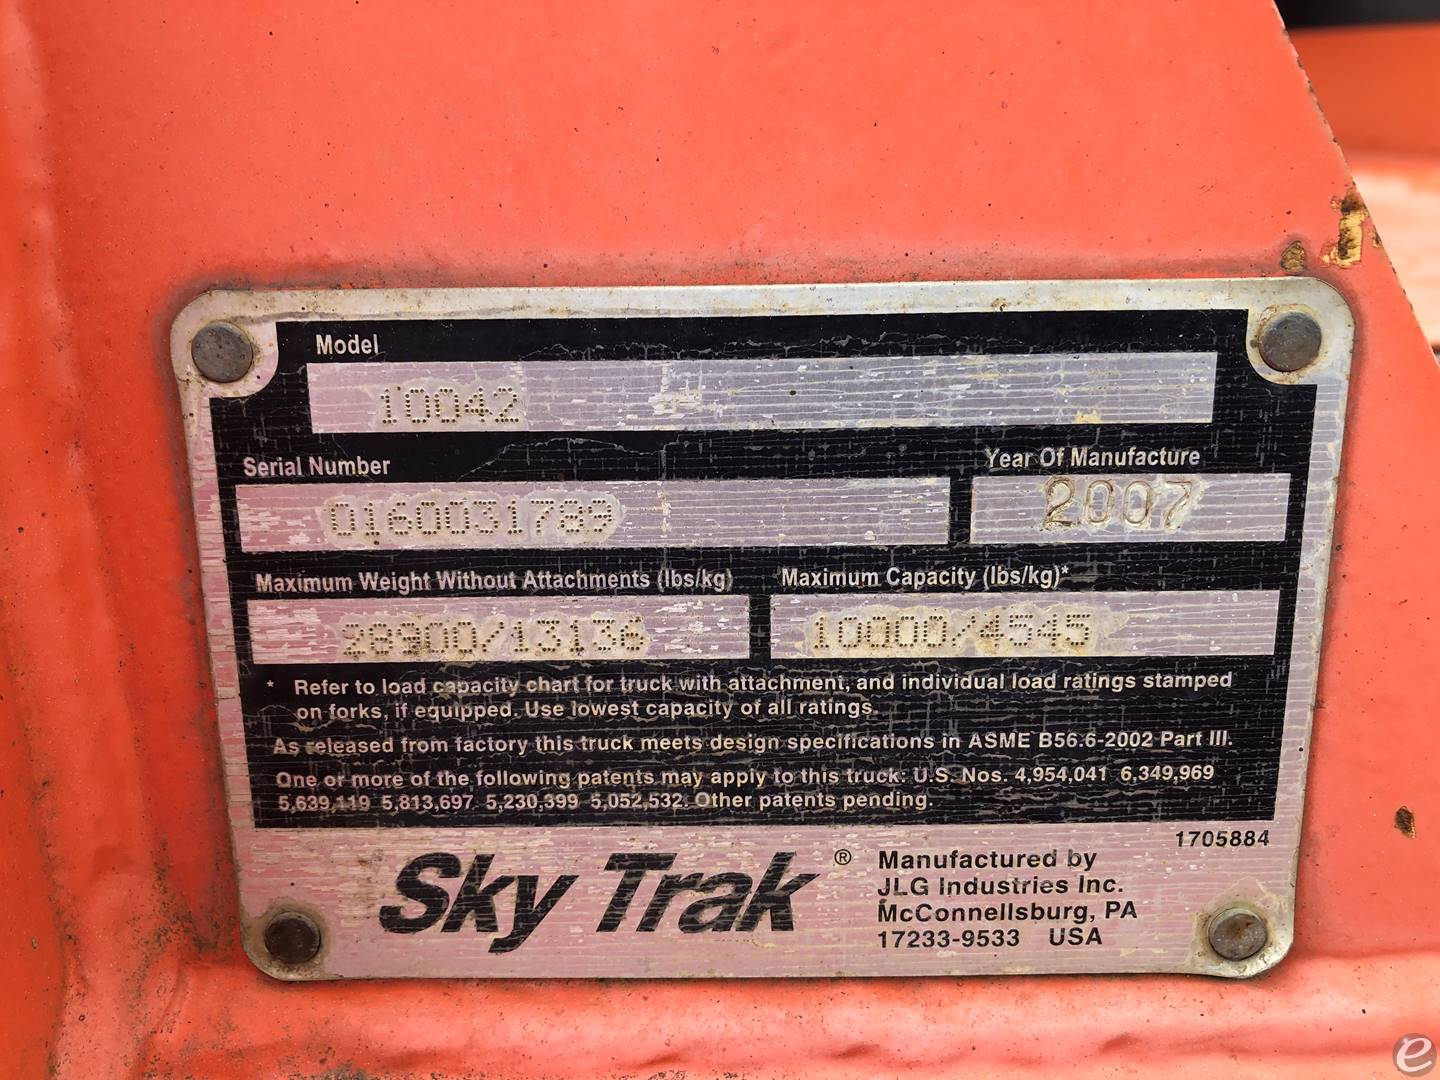 2007 Skytrak 10042